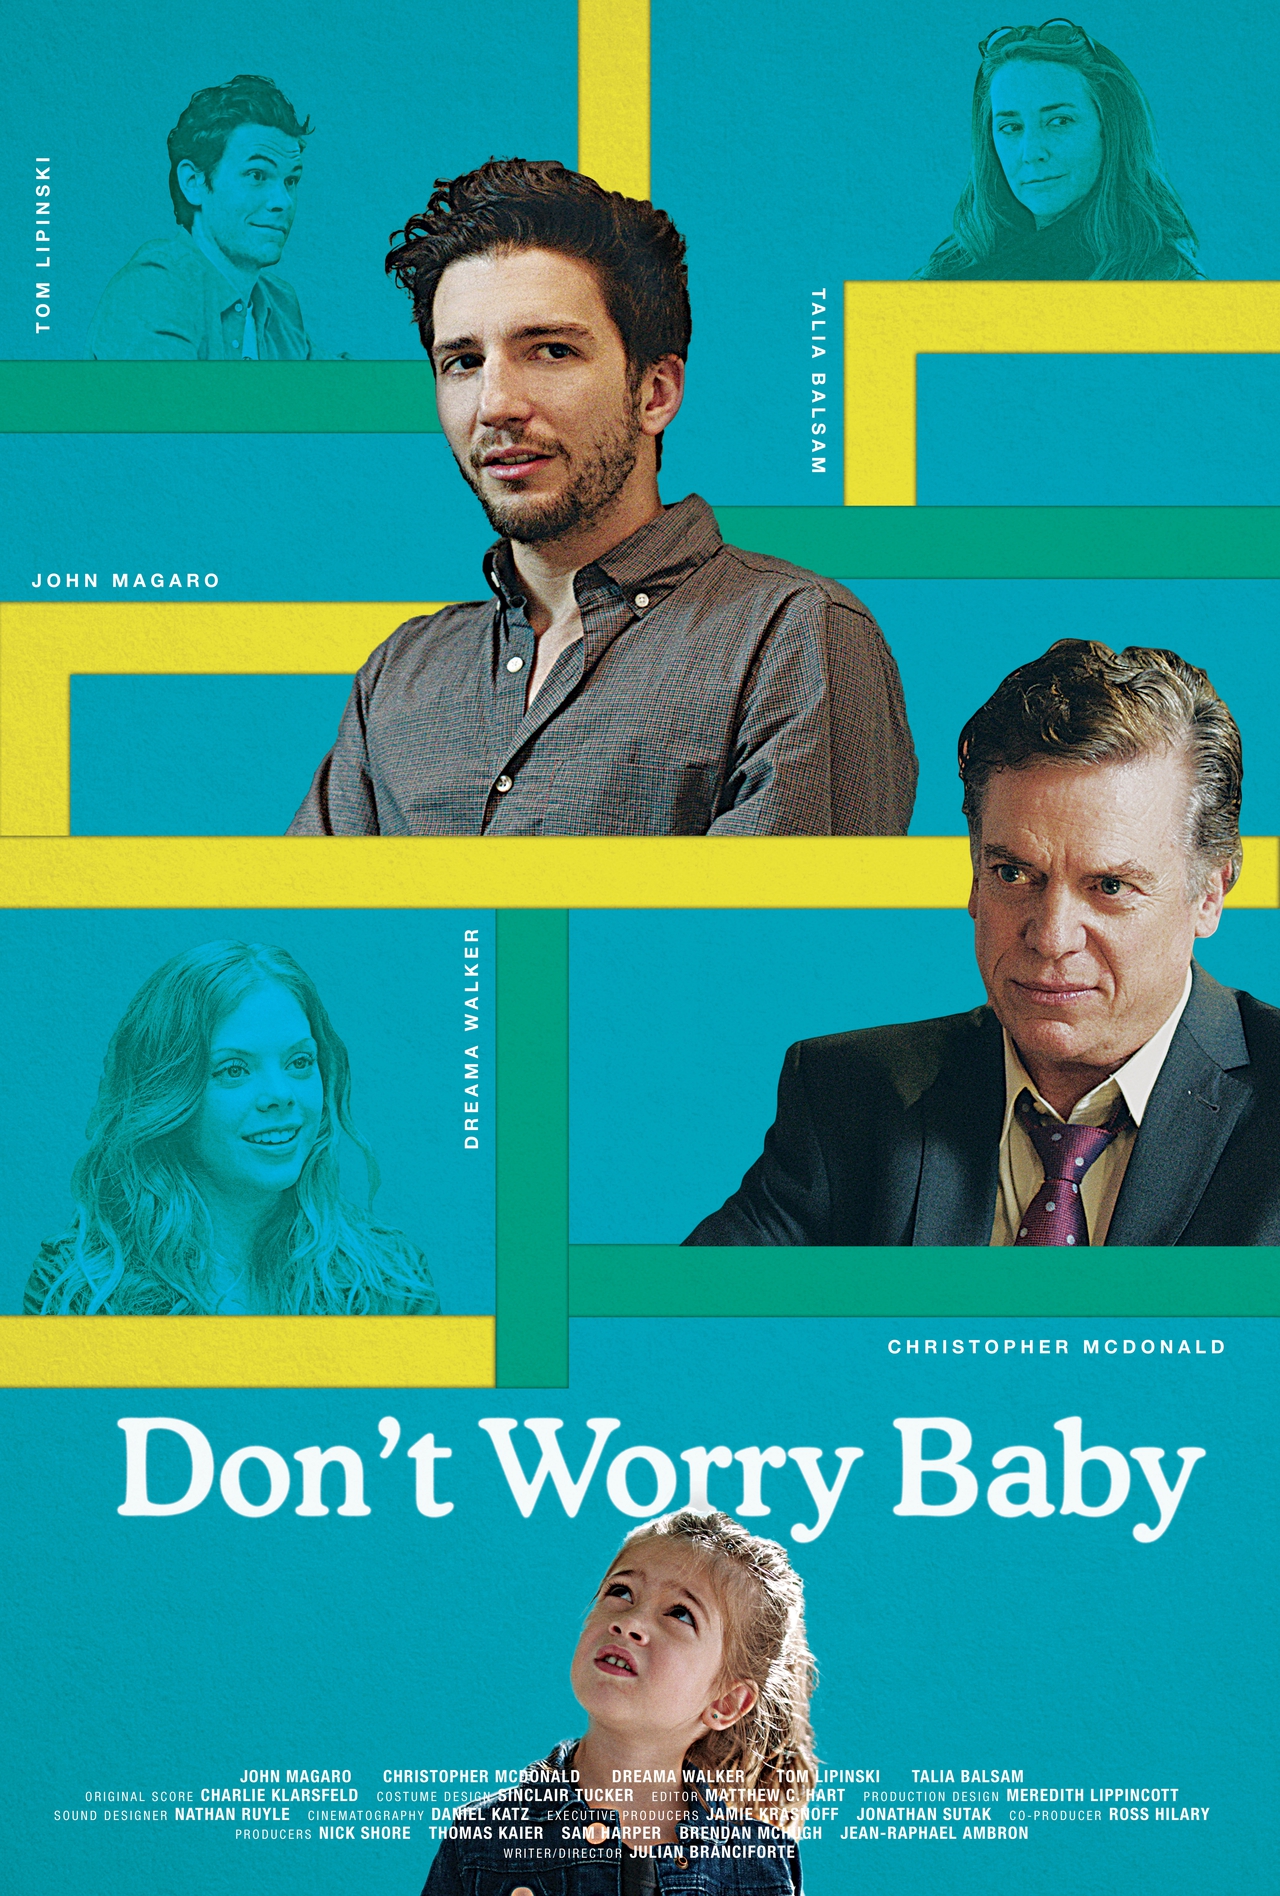 تالیا بالسام در صحنه فیلم سینمایی Don't Worry Baby به همراه John Magaro، Dreama Walker، Tom Lipinski و کریستوفر مک دونالد